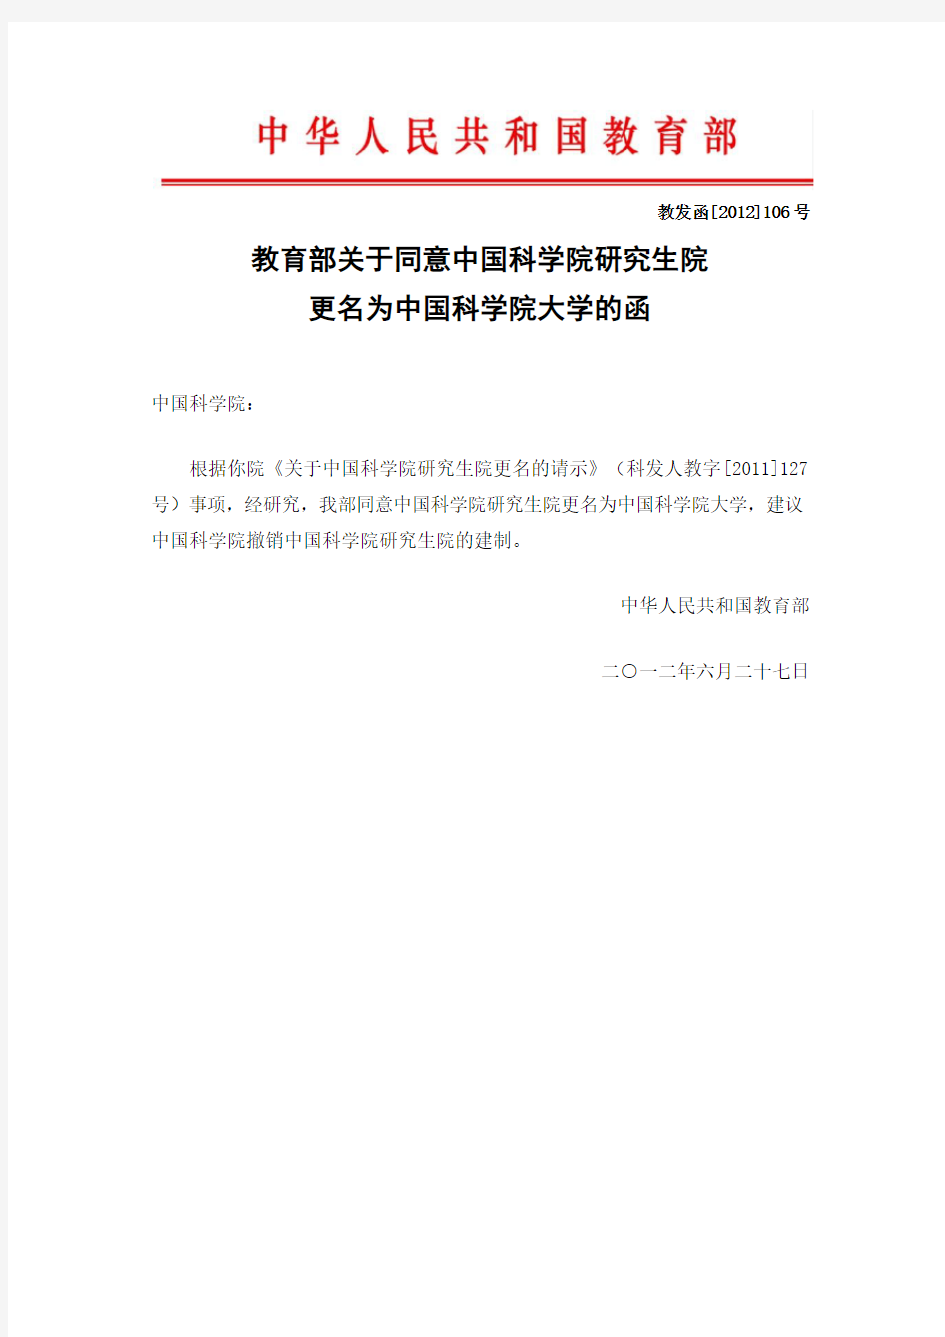 关于同意中国科学院研究生院更名为中国科学院大学的函